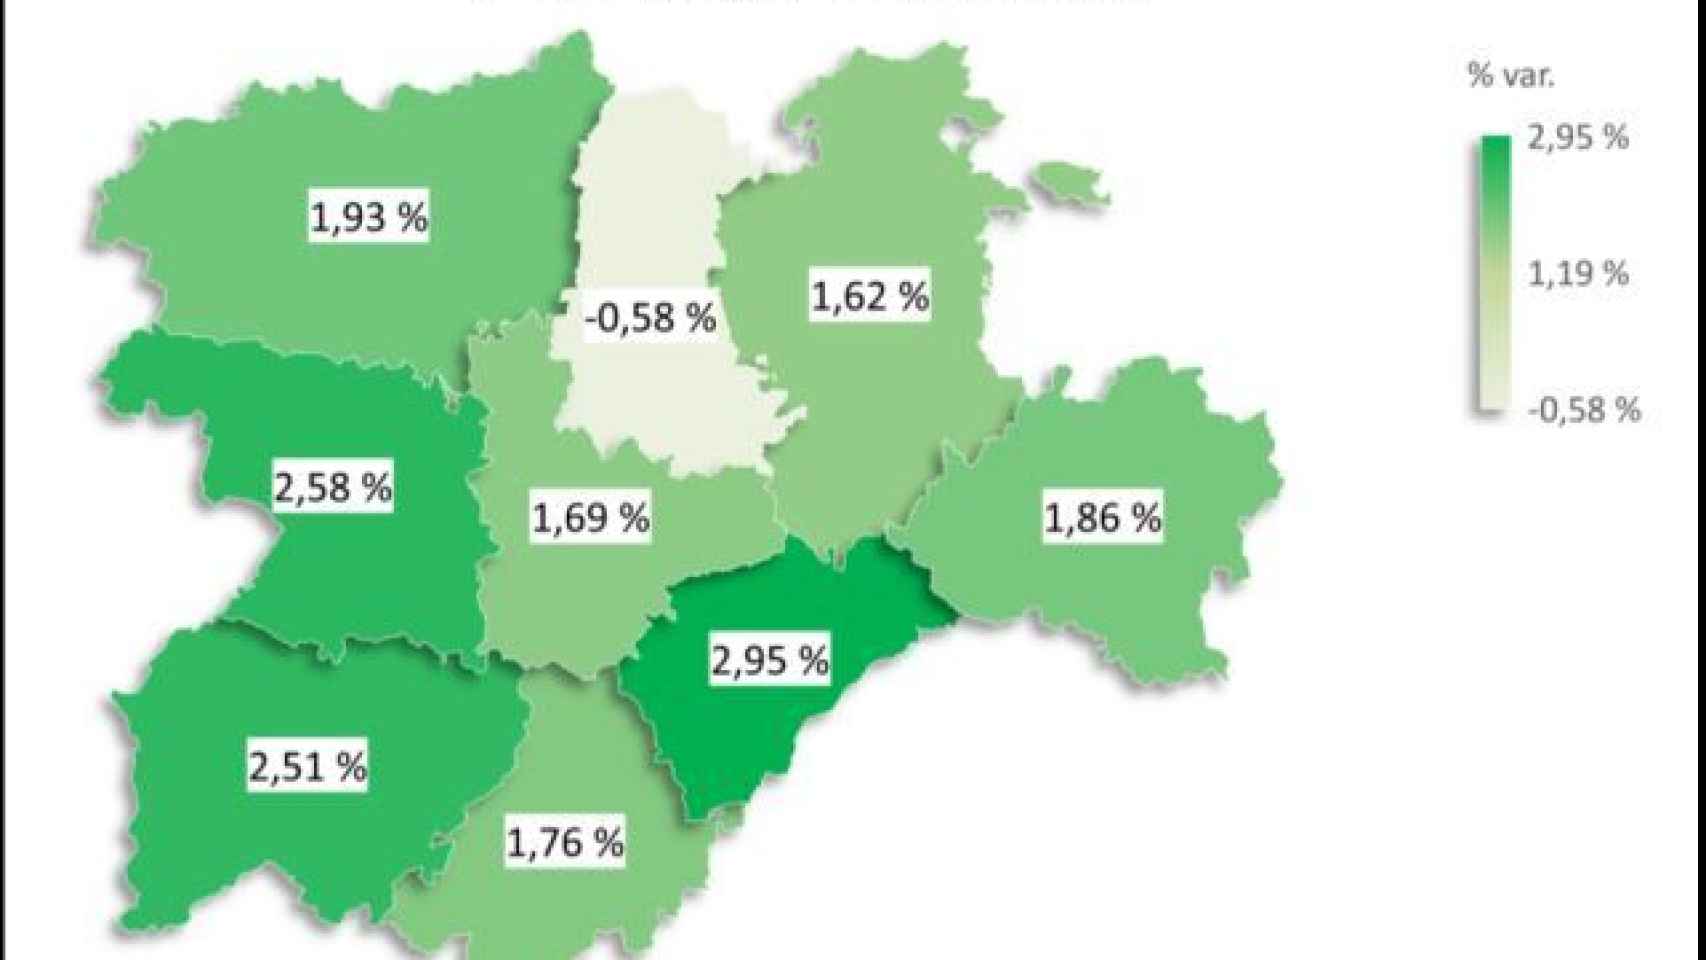 Porcentaje de variación interanual de la afiliación a la Seguridad Social por provincias